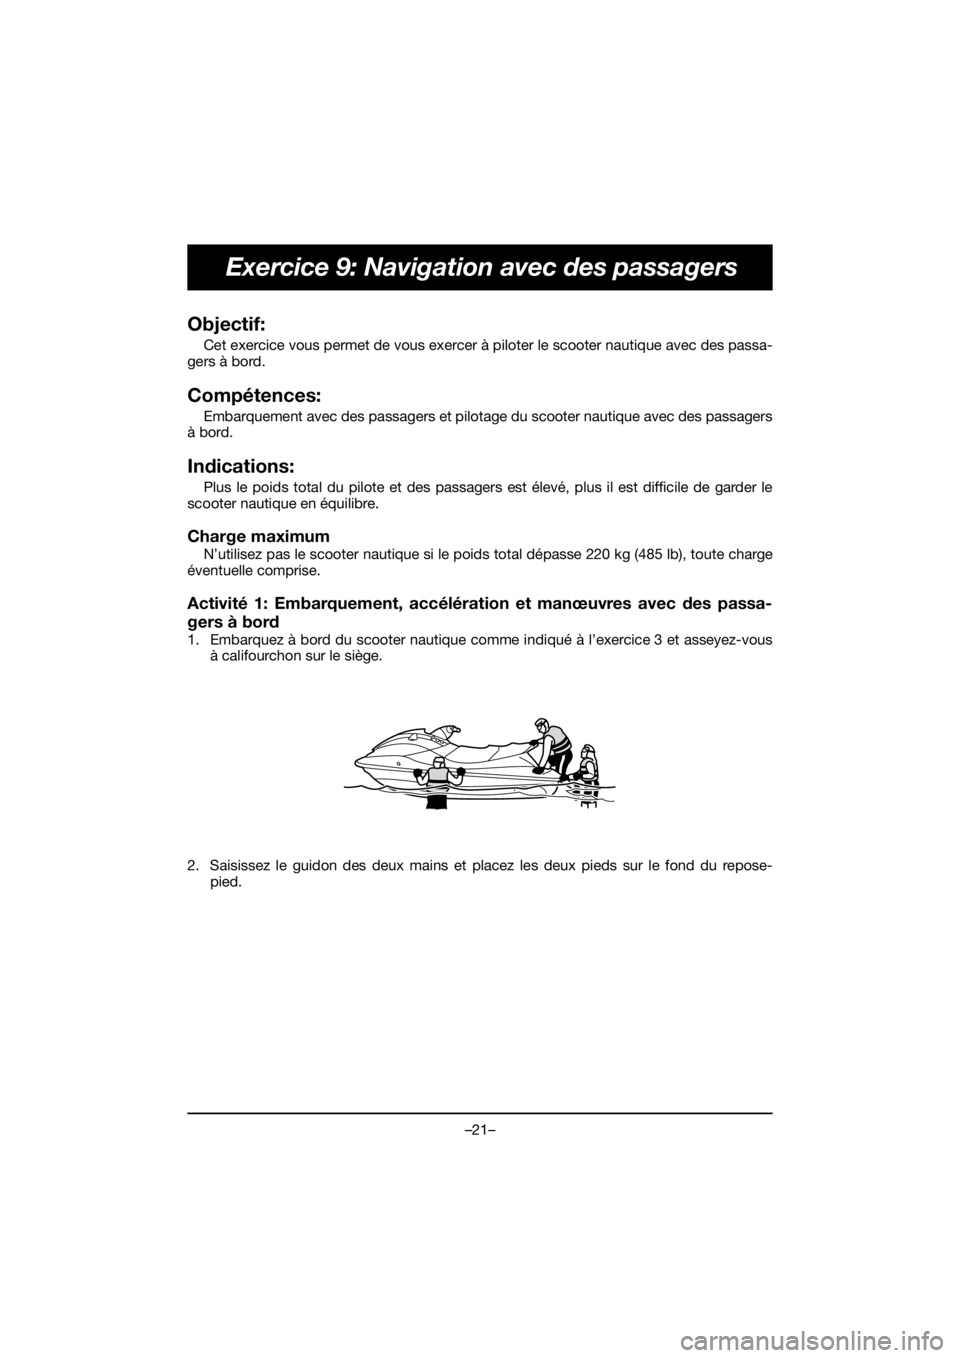 YAMAHA EX 2019  Notices Demploi (in French) –21–
Exercice 9: Navigation avec des passagers
Objectif: 
Cet exercice vous permet de vous exercer à piloter le scooter nautique avec des passa-
gers à bord.
Compétences: 
Embarquement avec des